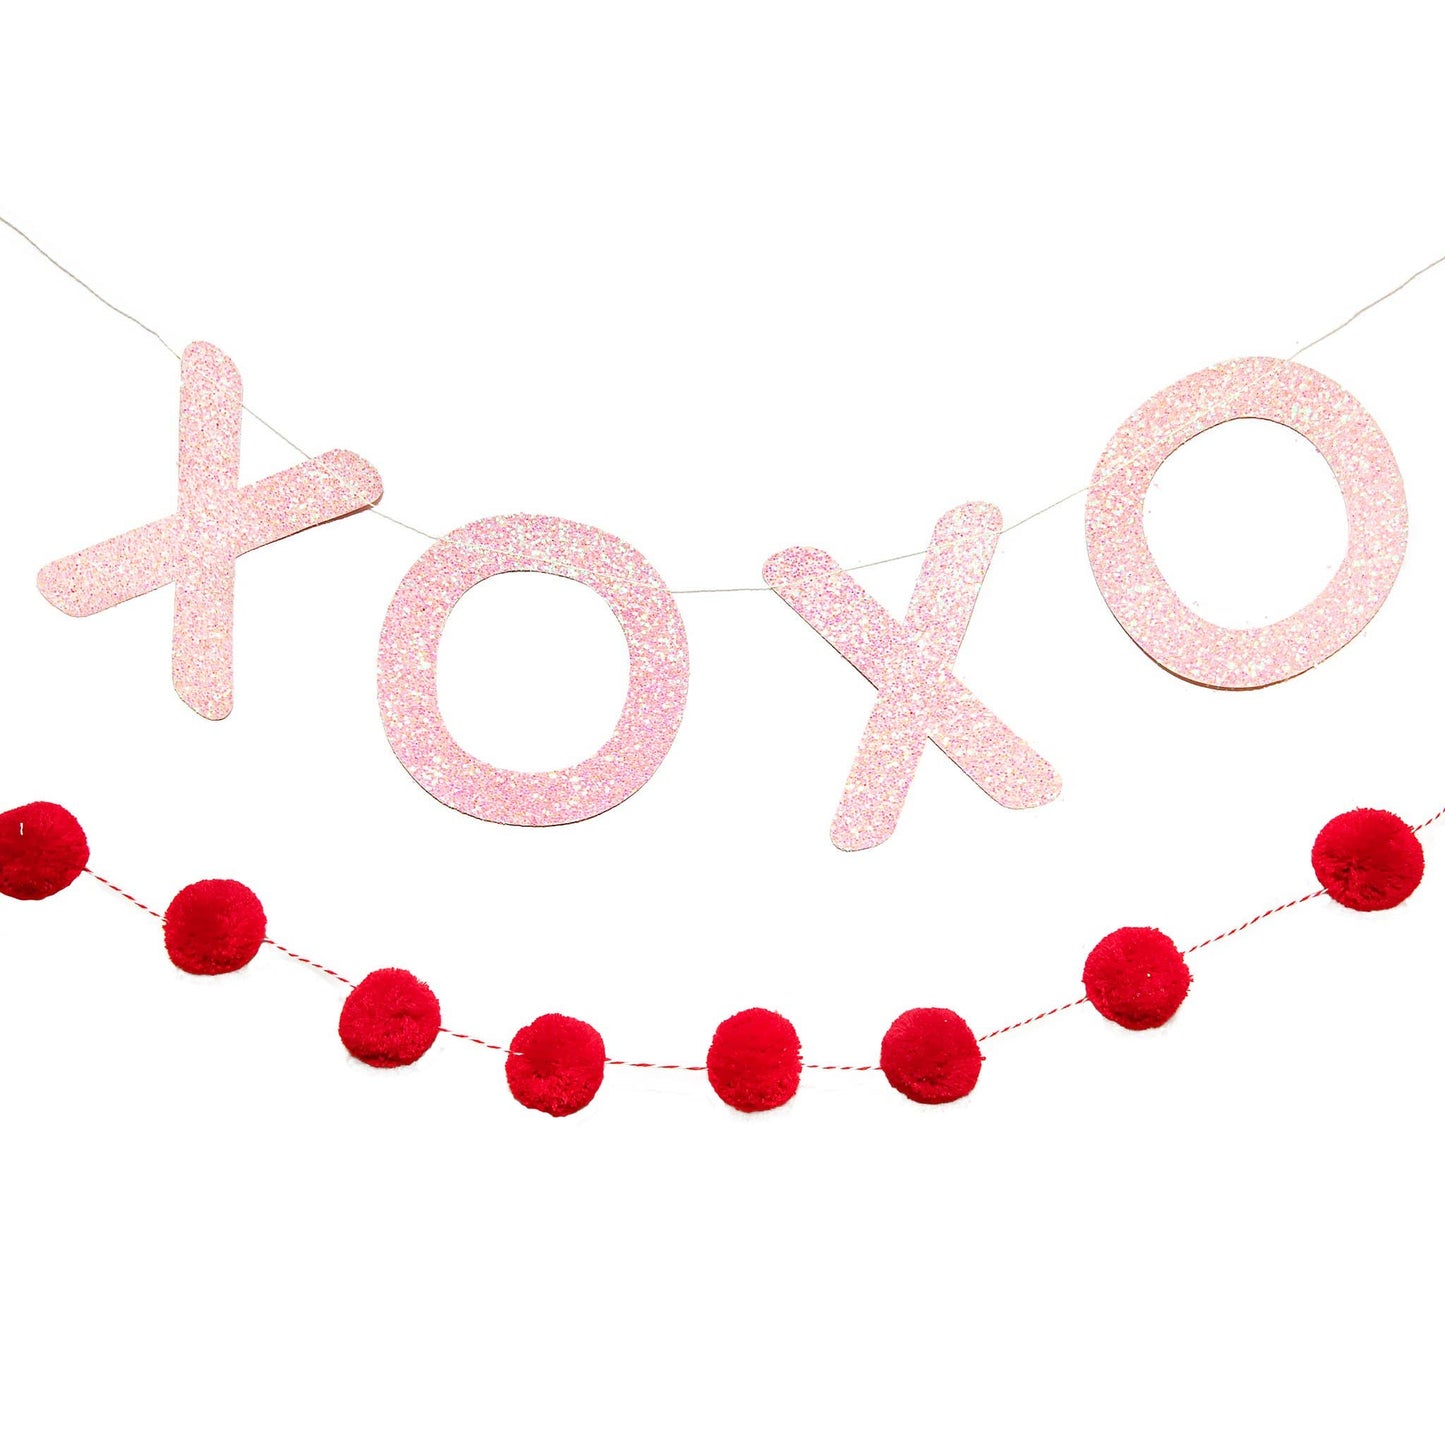 XOXO Banner Set